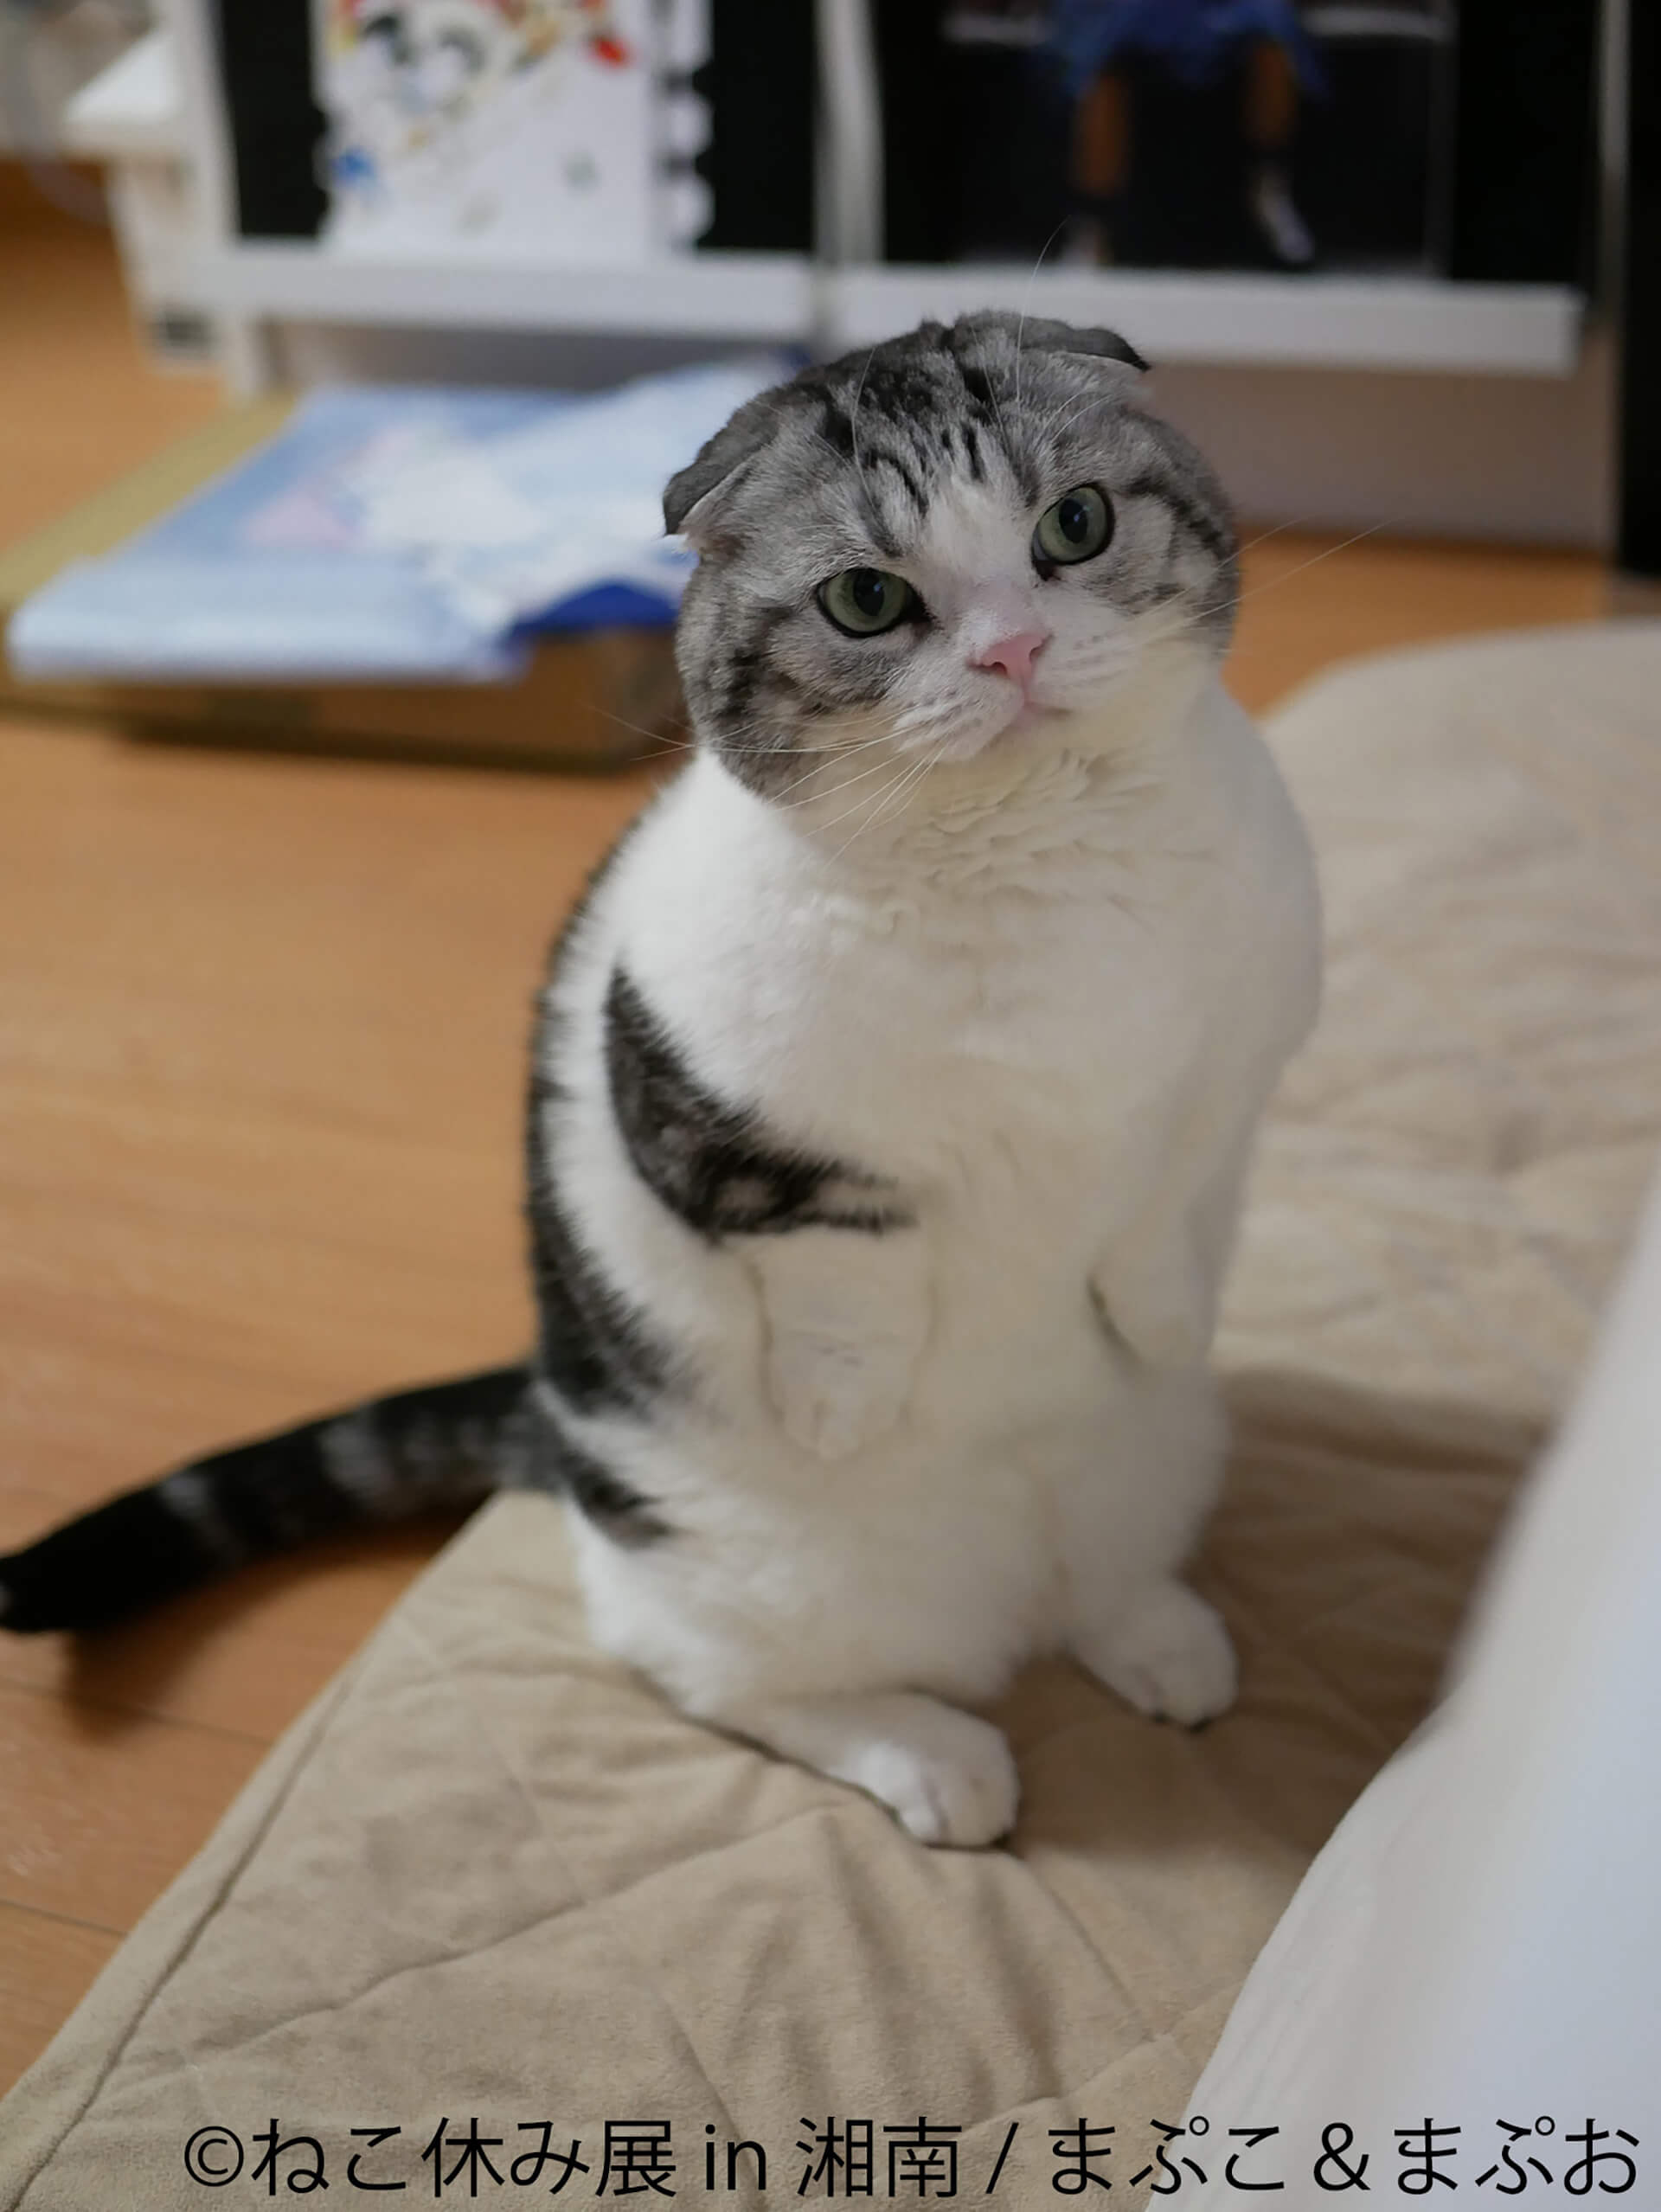 この写真はねこ休み展 in 湘南の展示作品で、こちらをつぶらな瞳で見る猫です